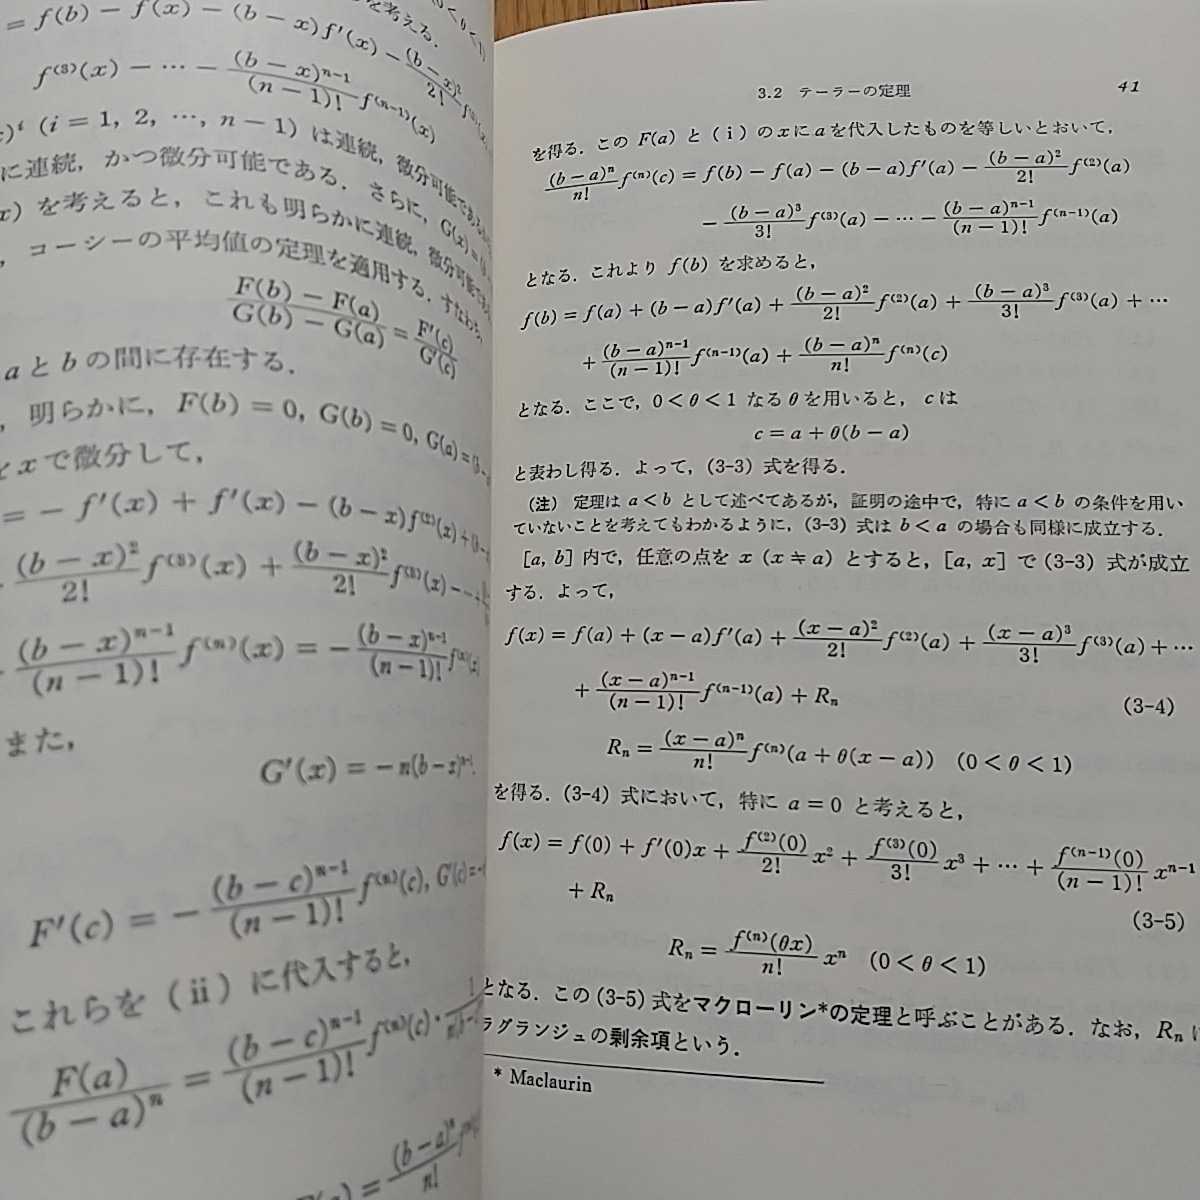 微積分概説 藤田志郎 内田老鶴圃 昭和62年第2版 中古 名著 数学 0210032